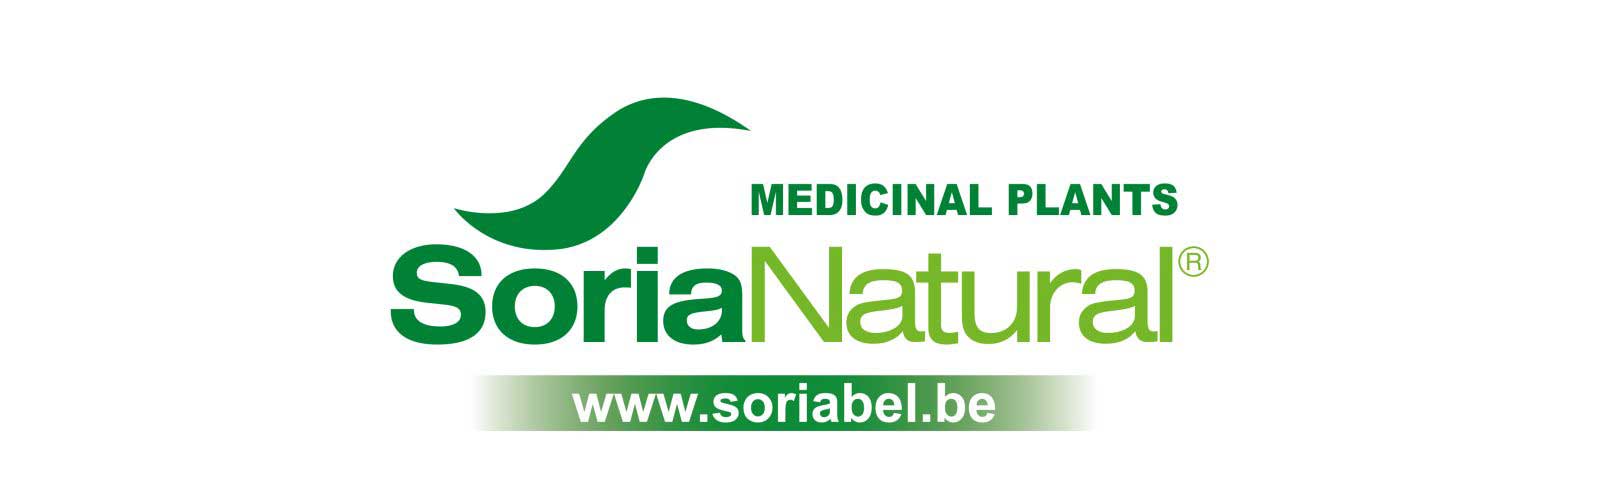 Logo_Soria_Natural_medicinal_plants